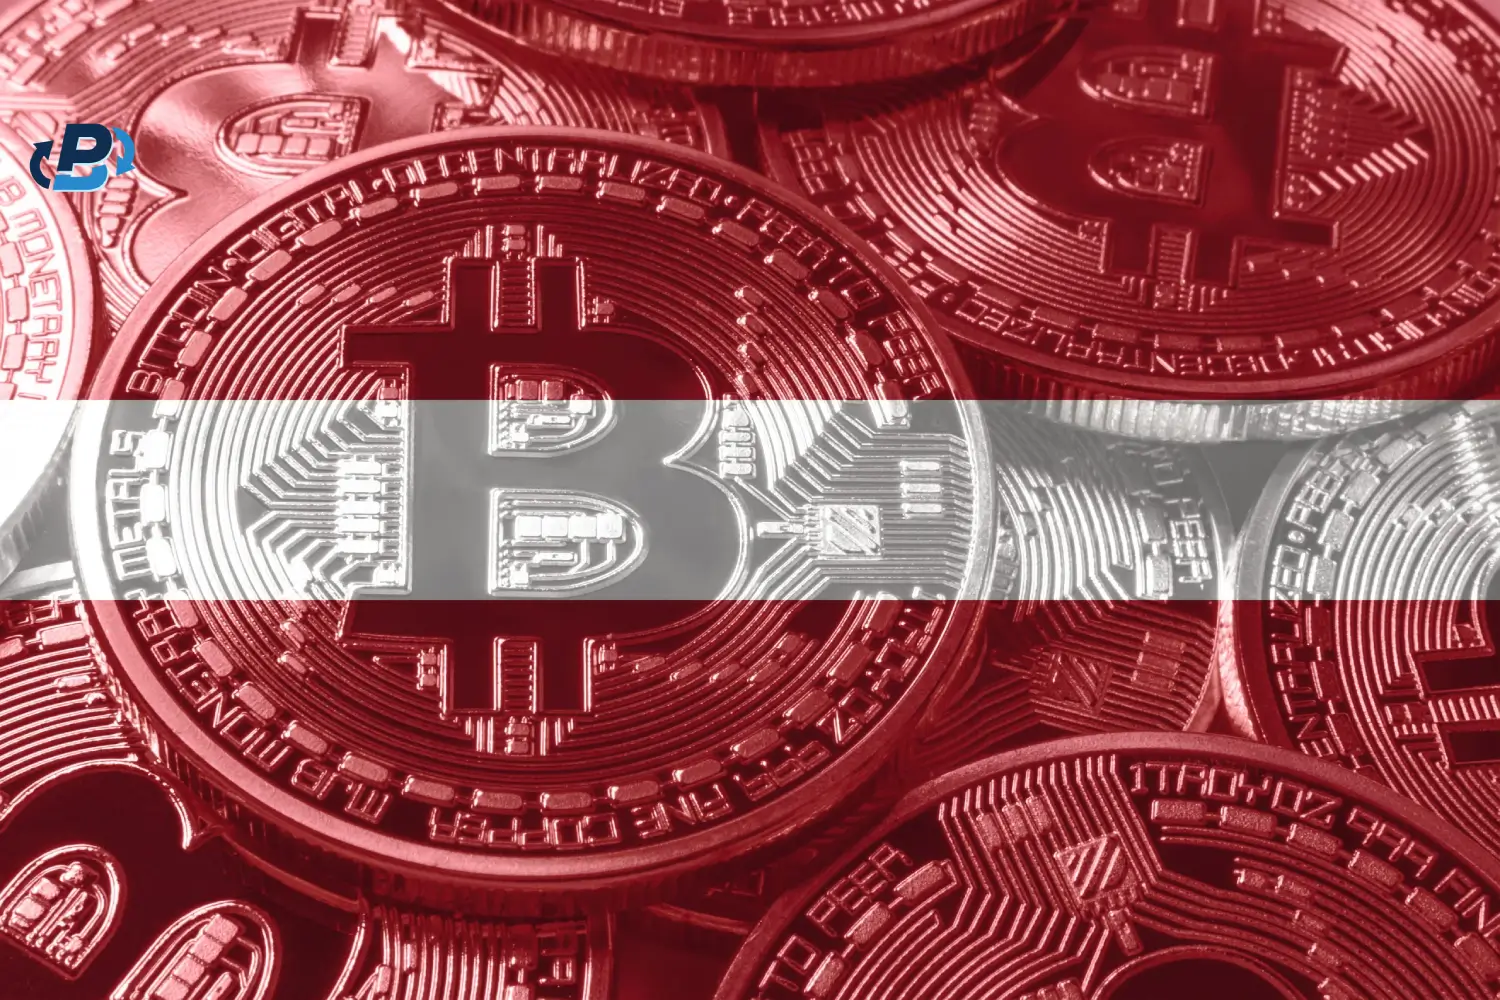 How do I sell Bitcoin in Latvia